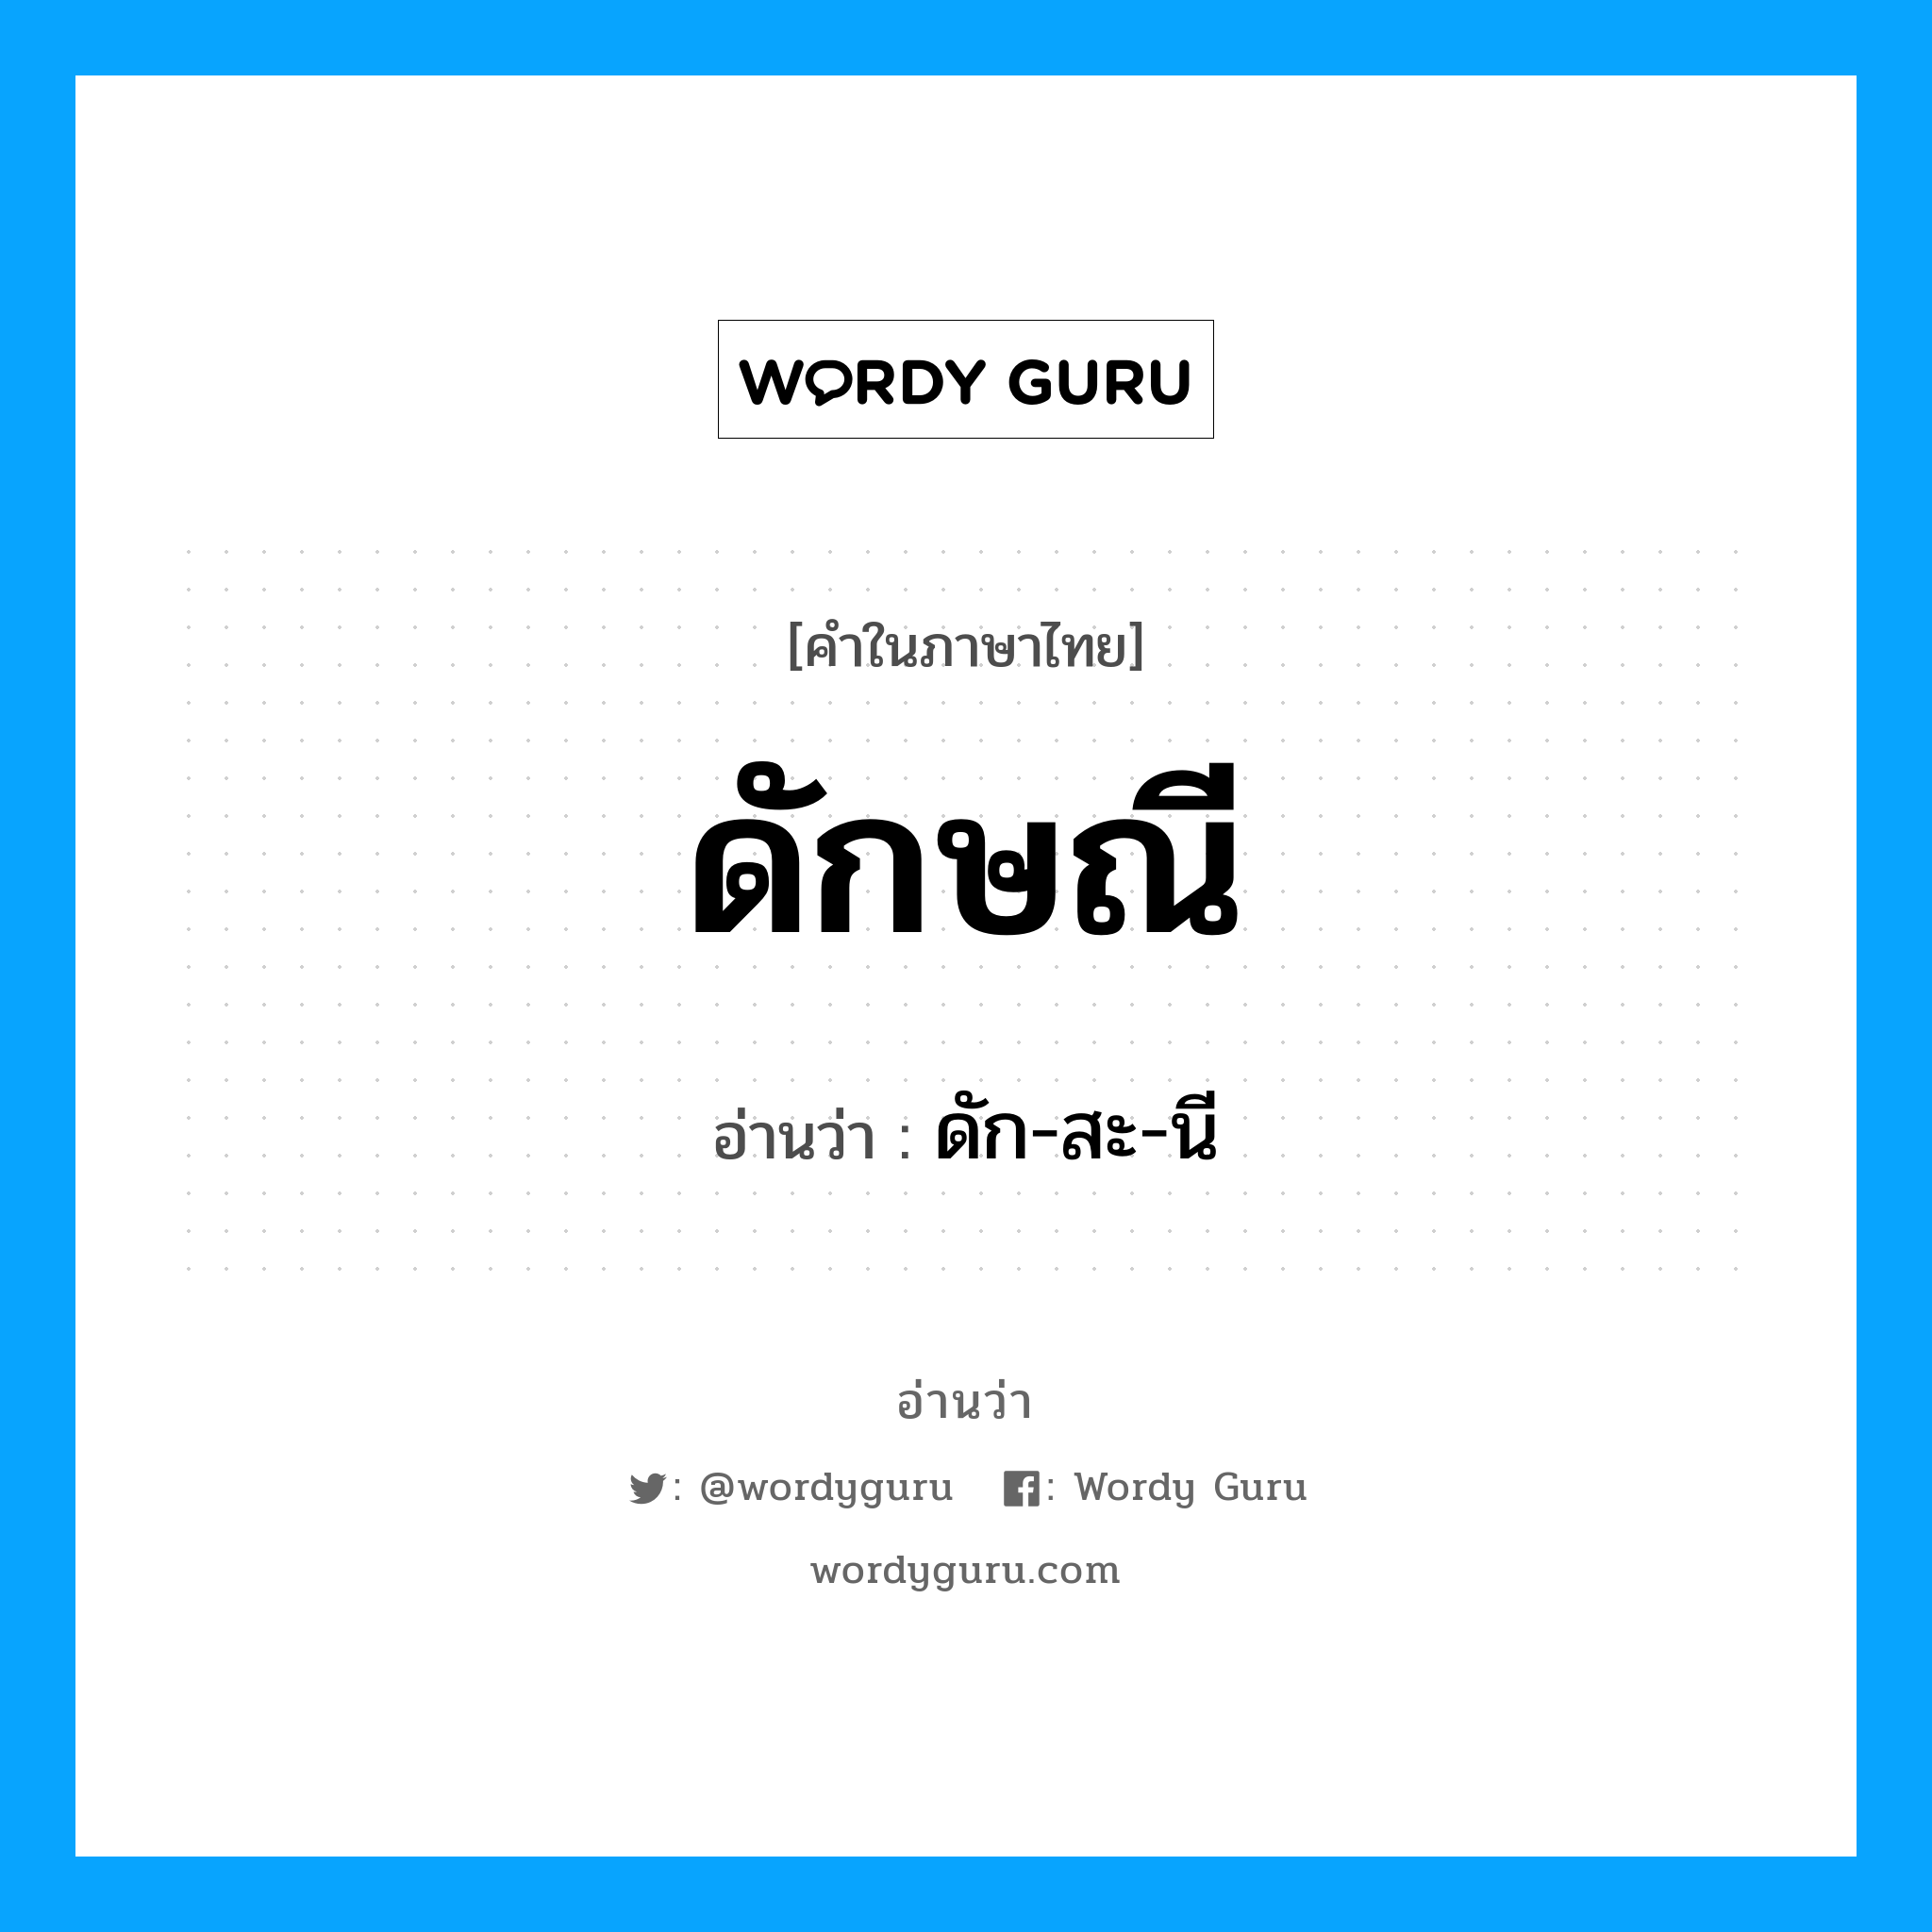 ดัก-สะ-นี เป็นคำอ่านของคำไหน?, คำในภาษาไทย ดัก-สะ-นี อ่านว่า ดักษณี